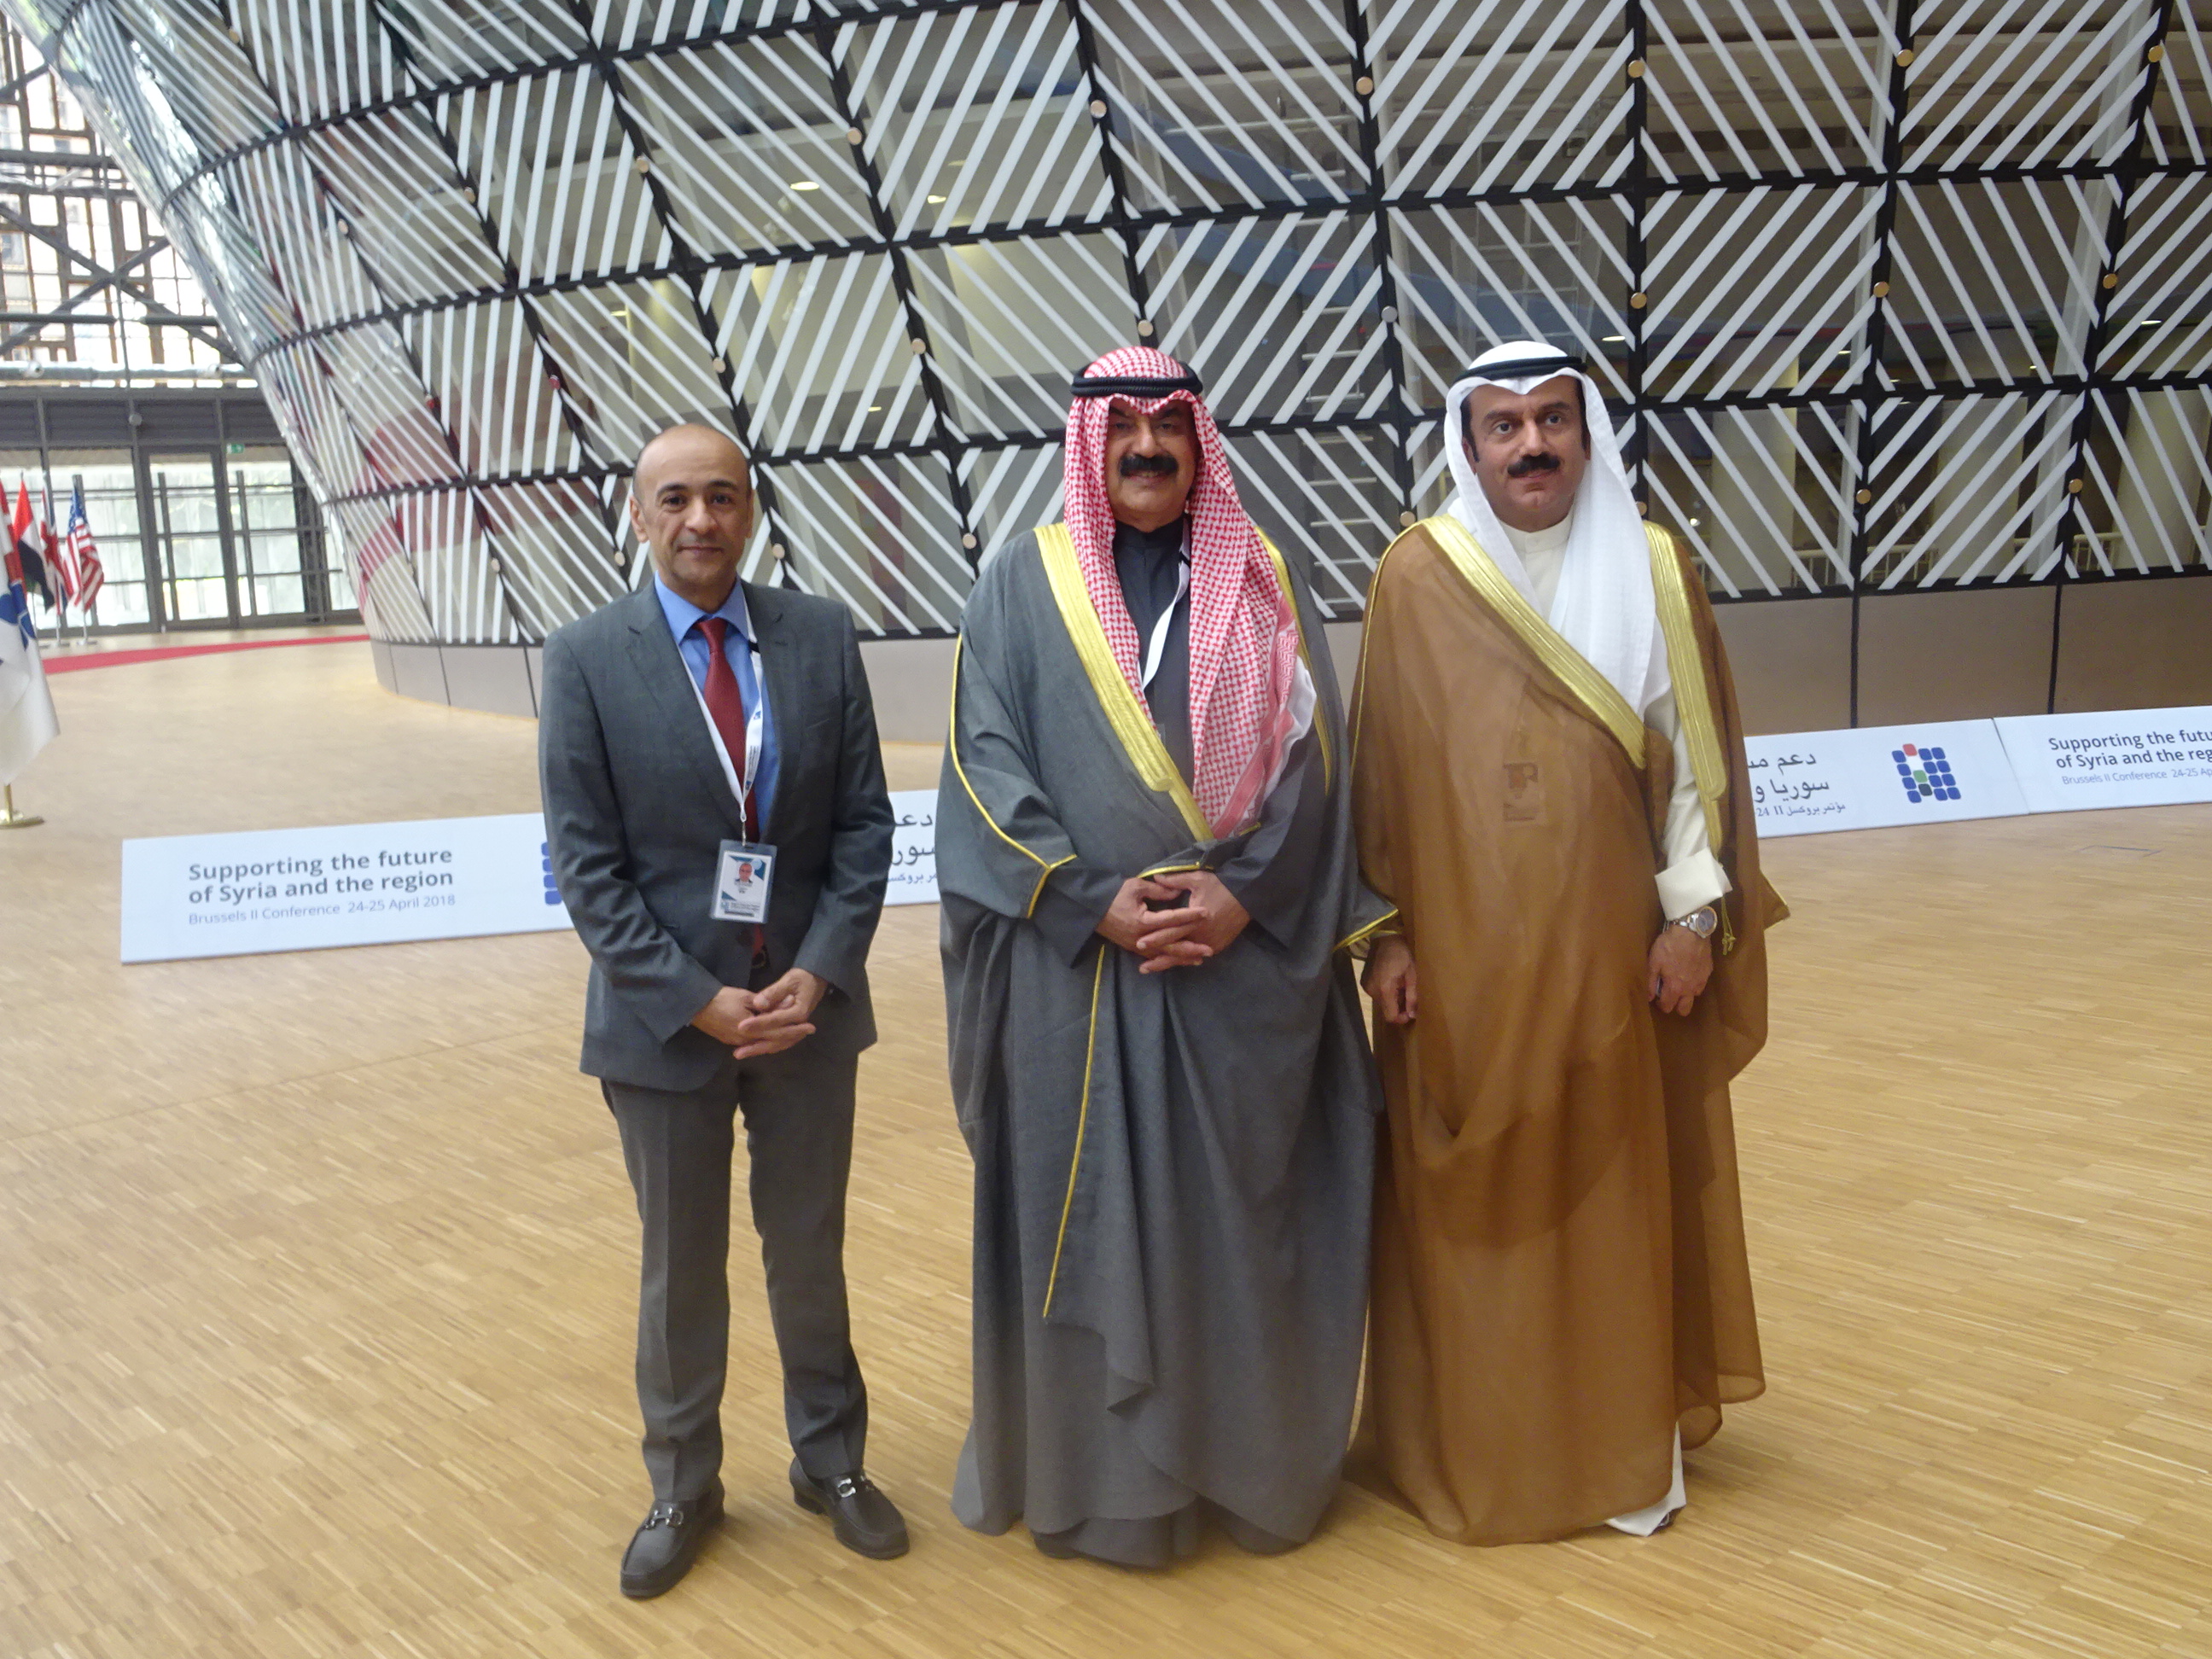 نائب وزير الخارجية الكويتي خالد الجار الله عقب مشاركته في مؤتمر بروكسل الثاني حول مستقبل سوريا والمنطقة